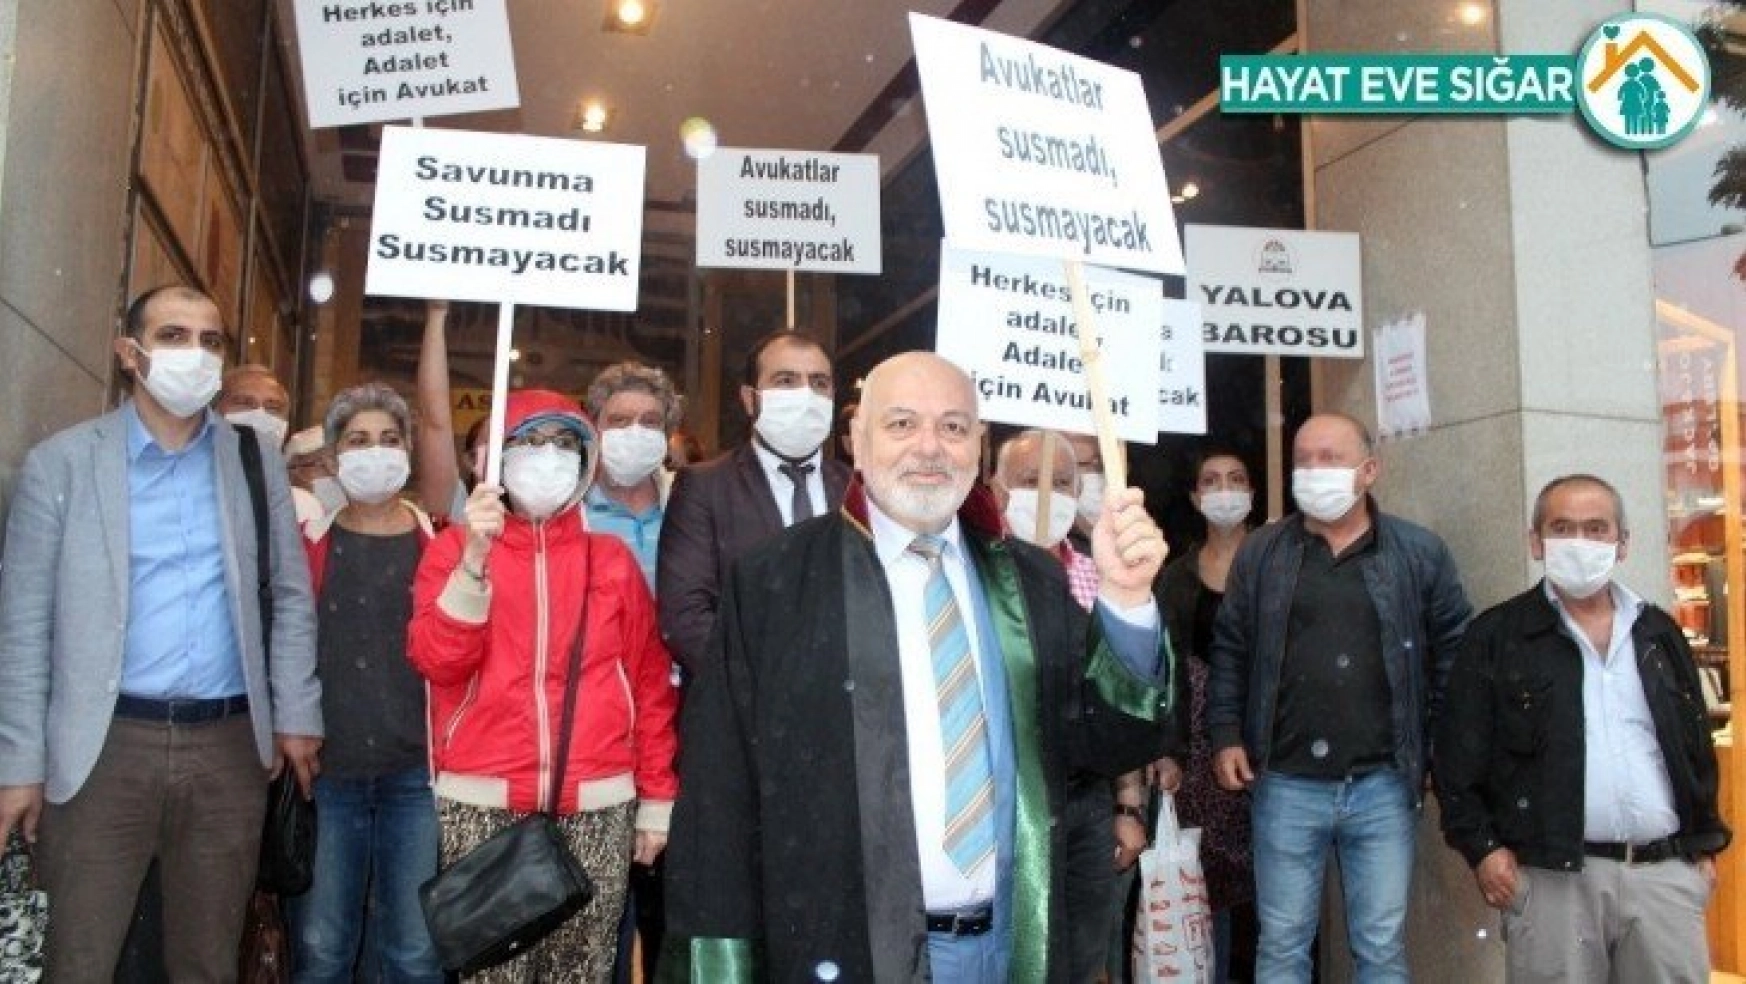 Ankara'ya yürüyen baro başkanı yağmura yakalandı